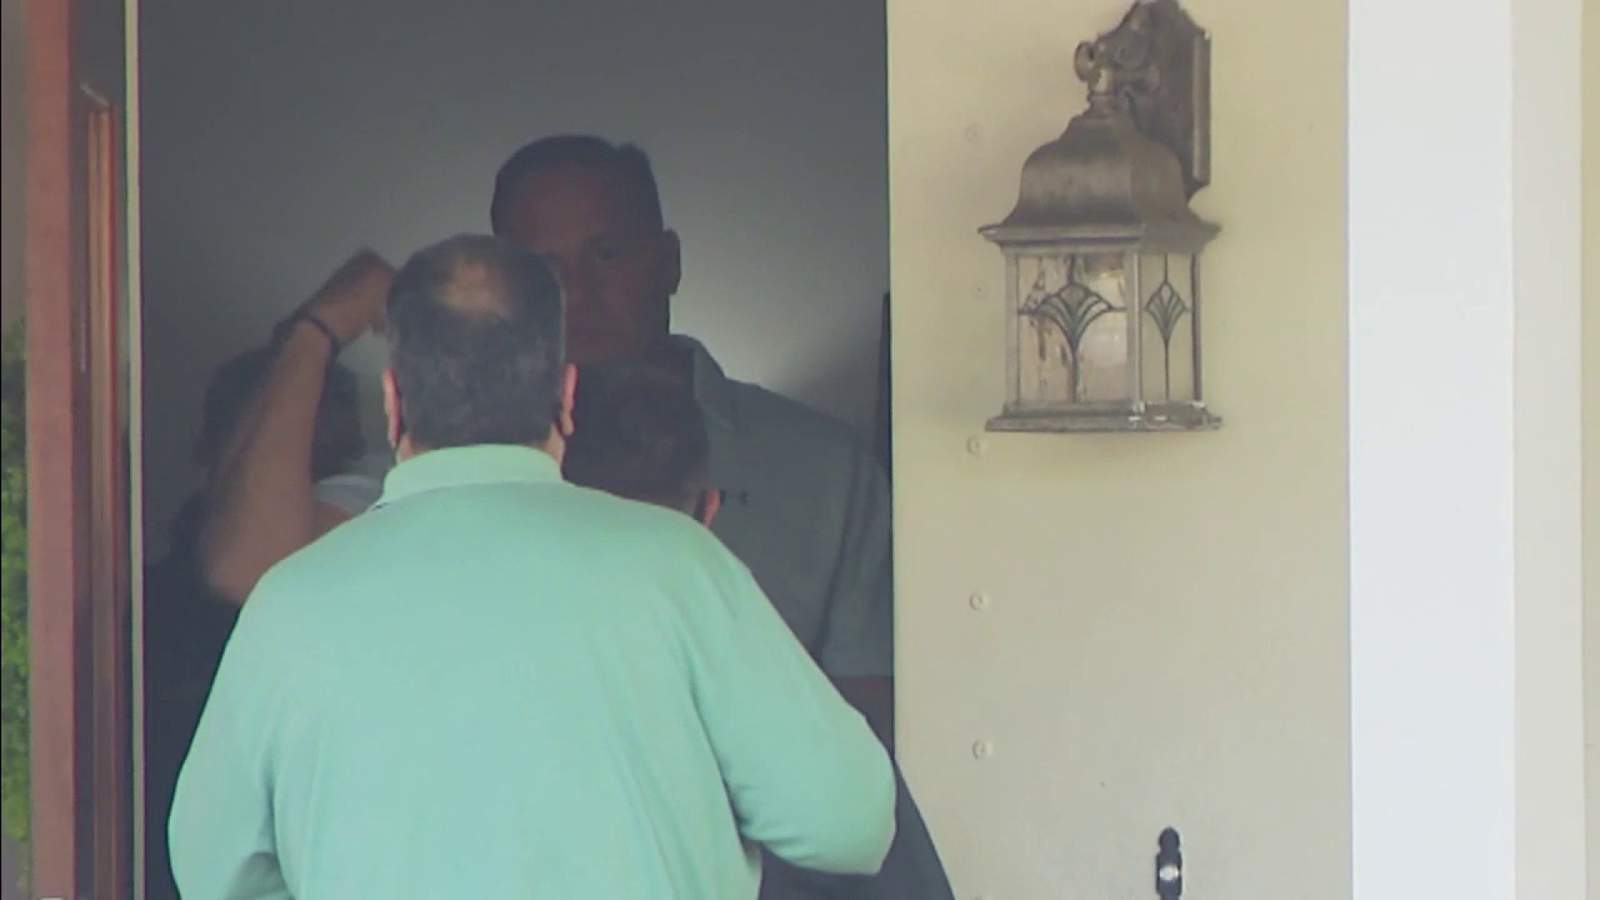 Former Florida Senator Frank Artiles is arrested in secret candidacy scheme